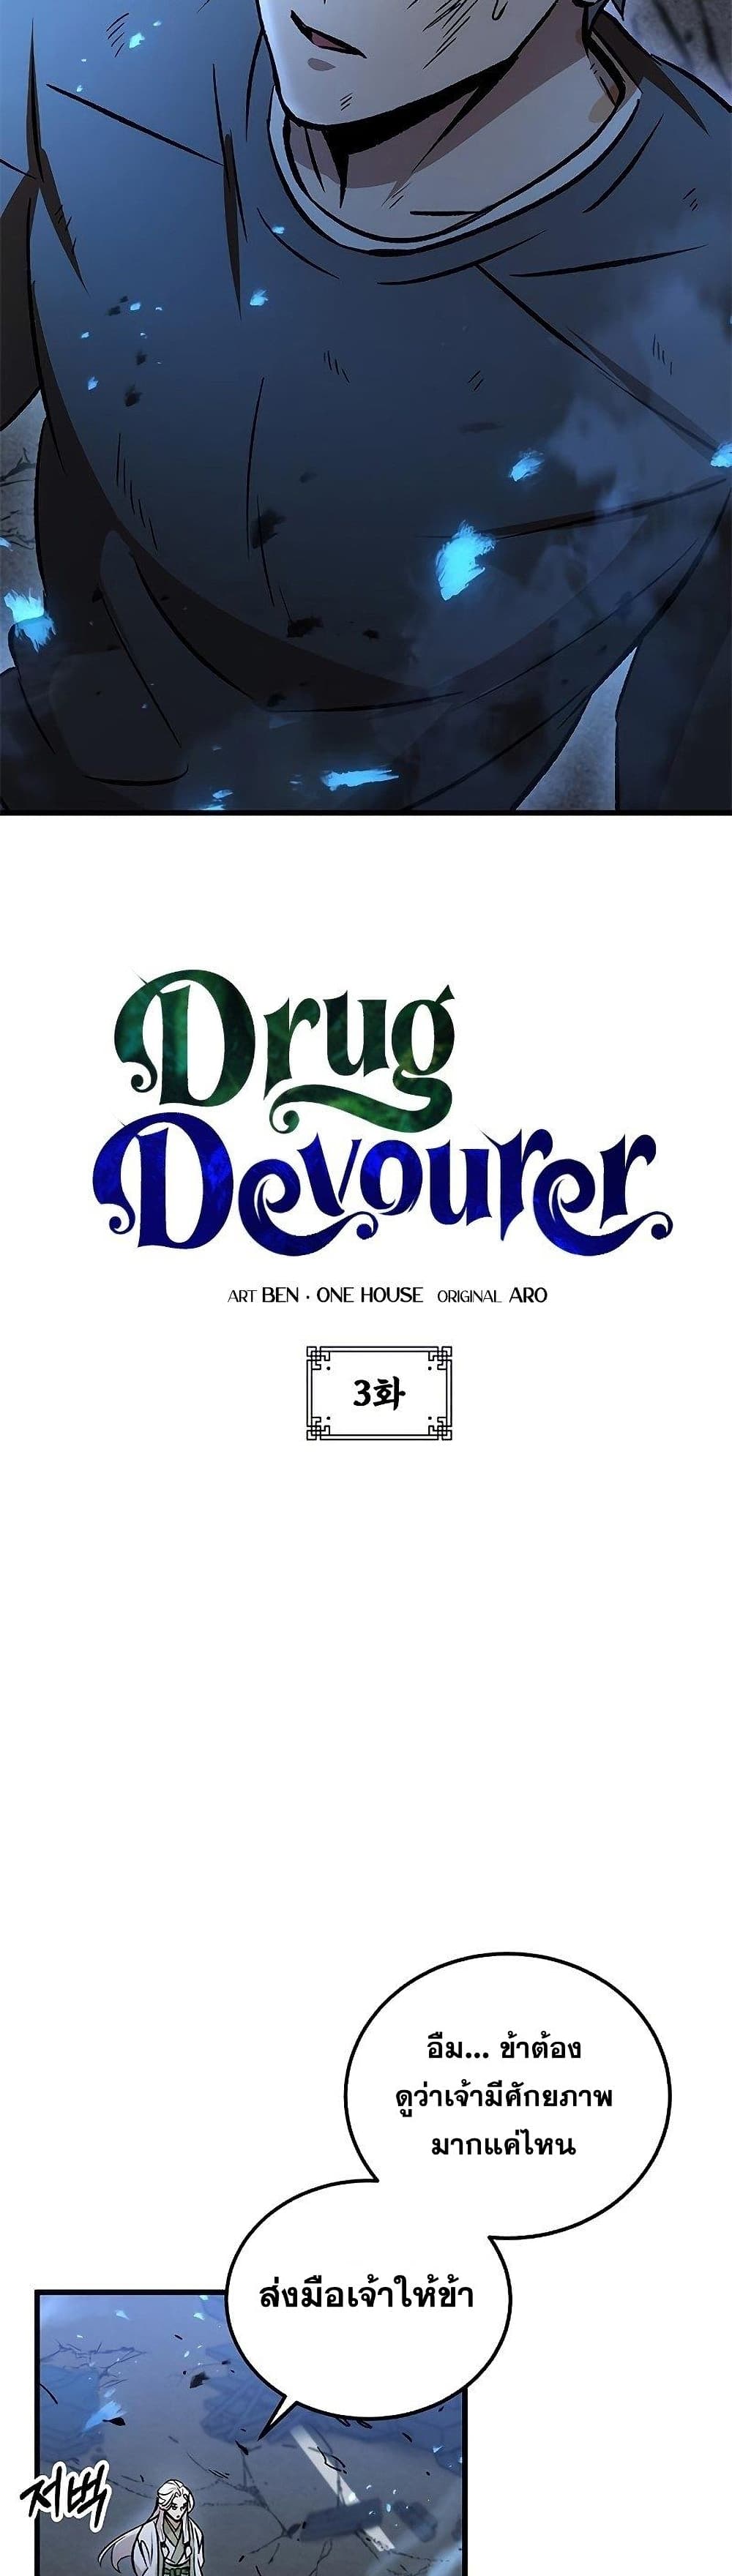 Drug Devourer 3-3